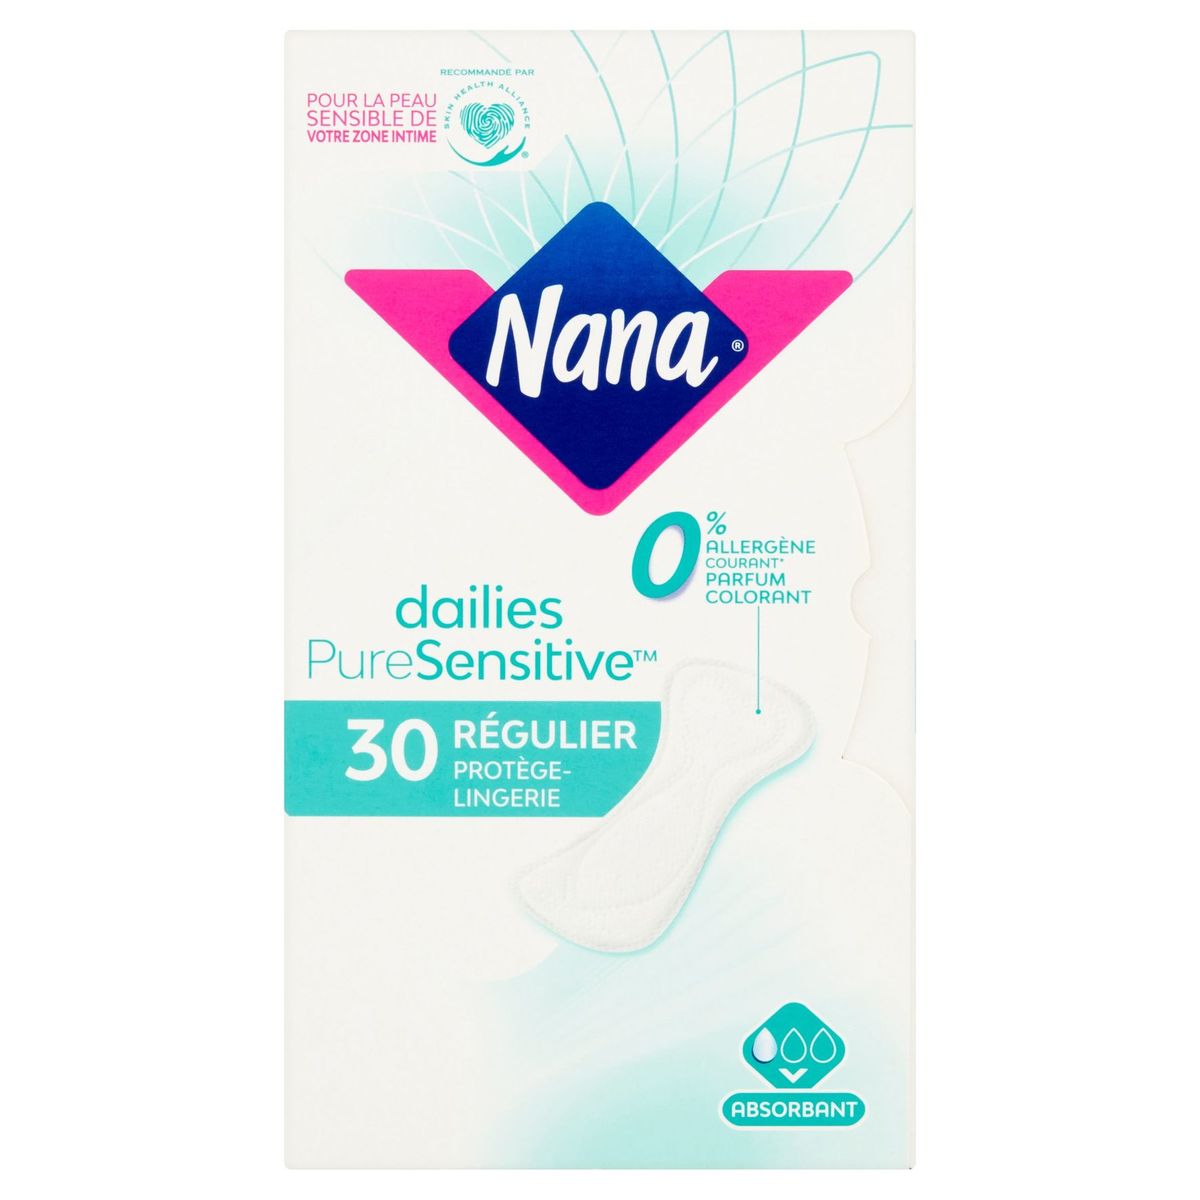 Nana Dailies Pure Sensitive Régulier Protège-Lingerie 30 Pièces